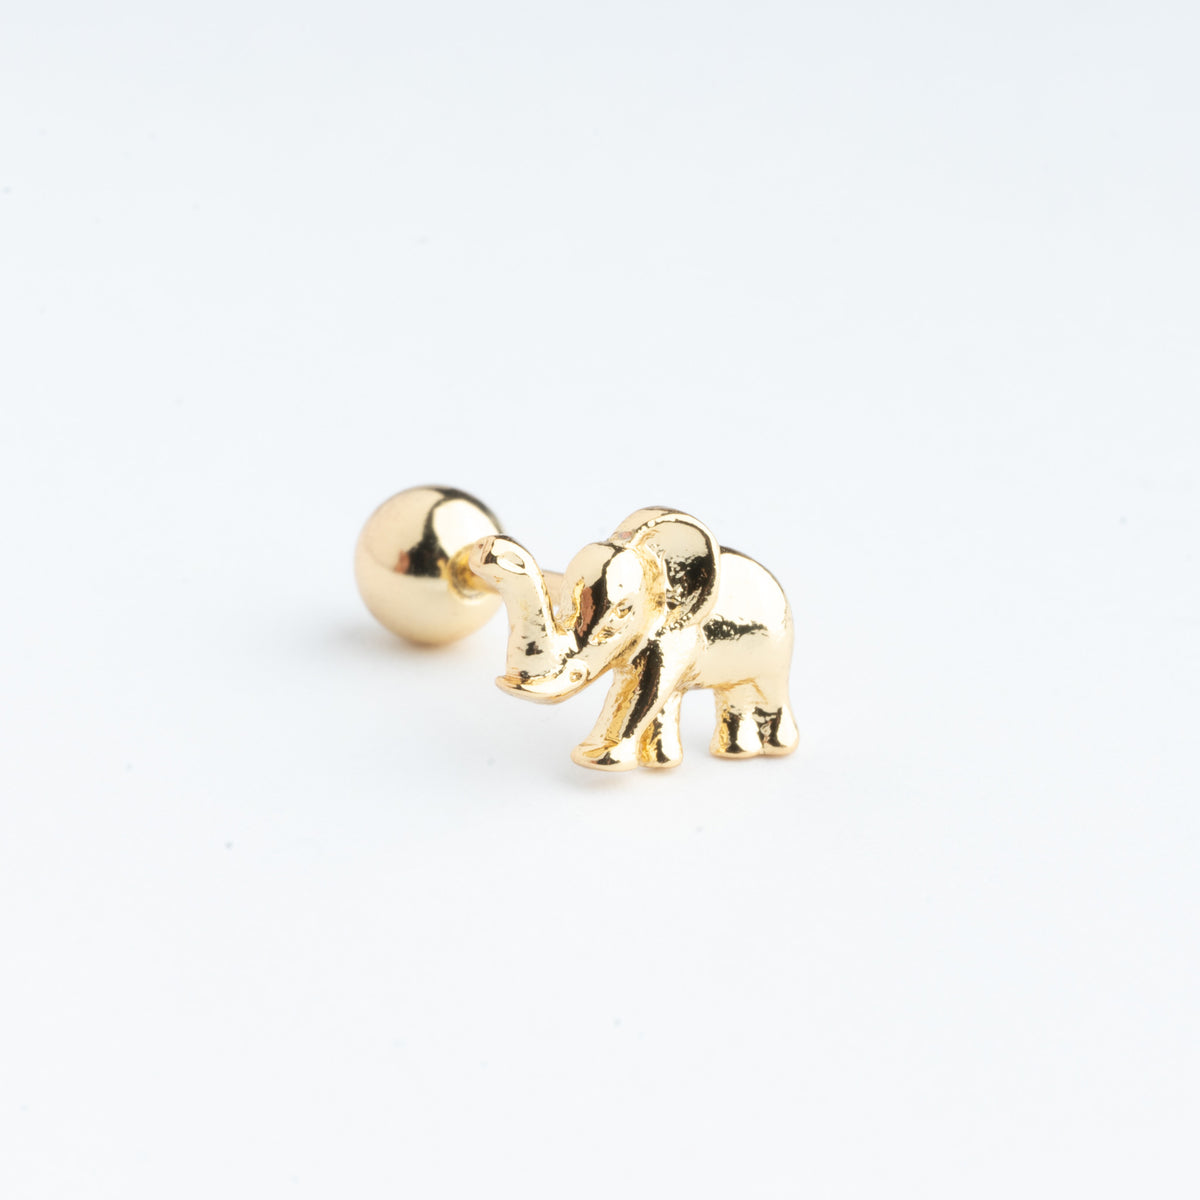 Piercing en forma de elefante color dorado